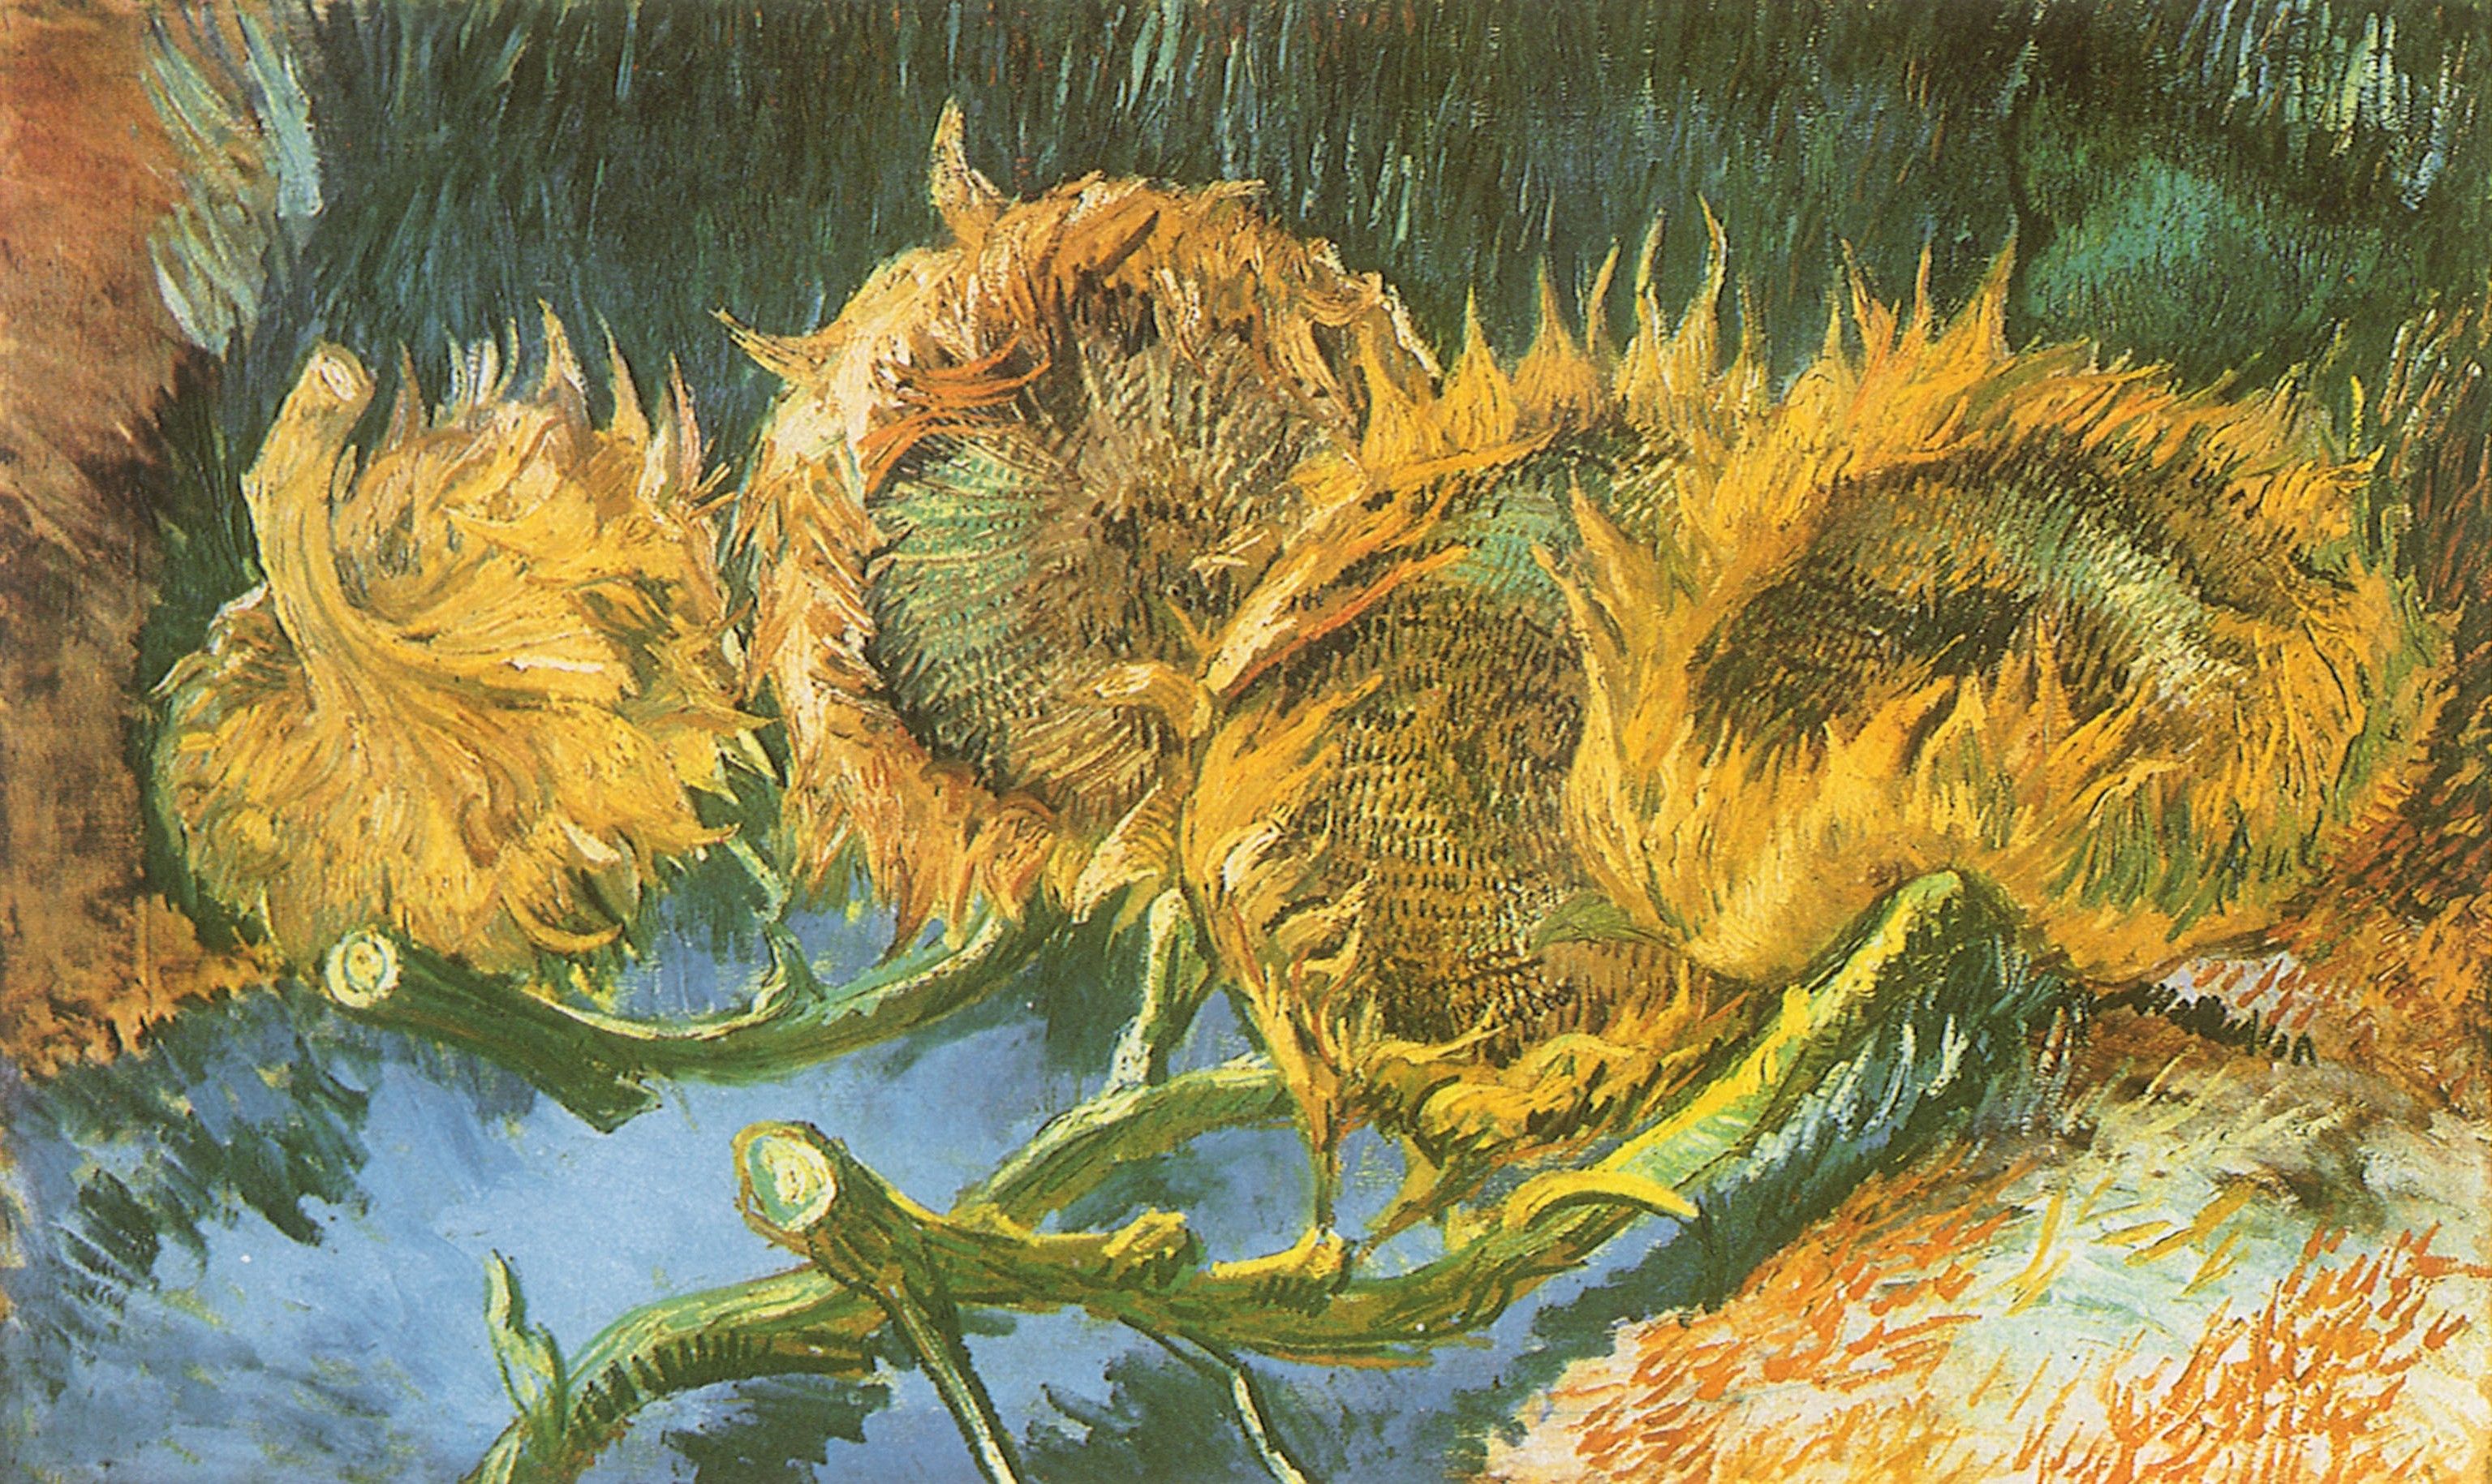 ilustraciones, Vincent Van Gogh, girasoles, pintura, arte clásico